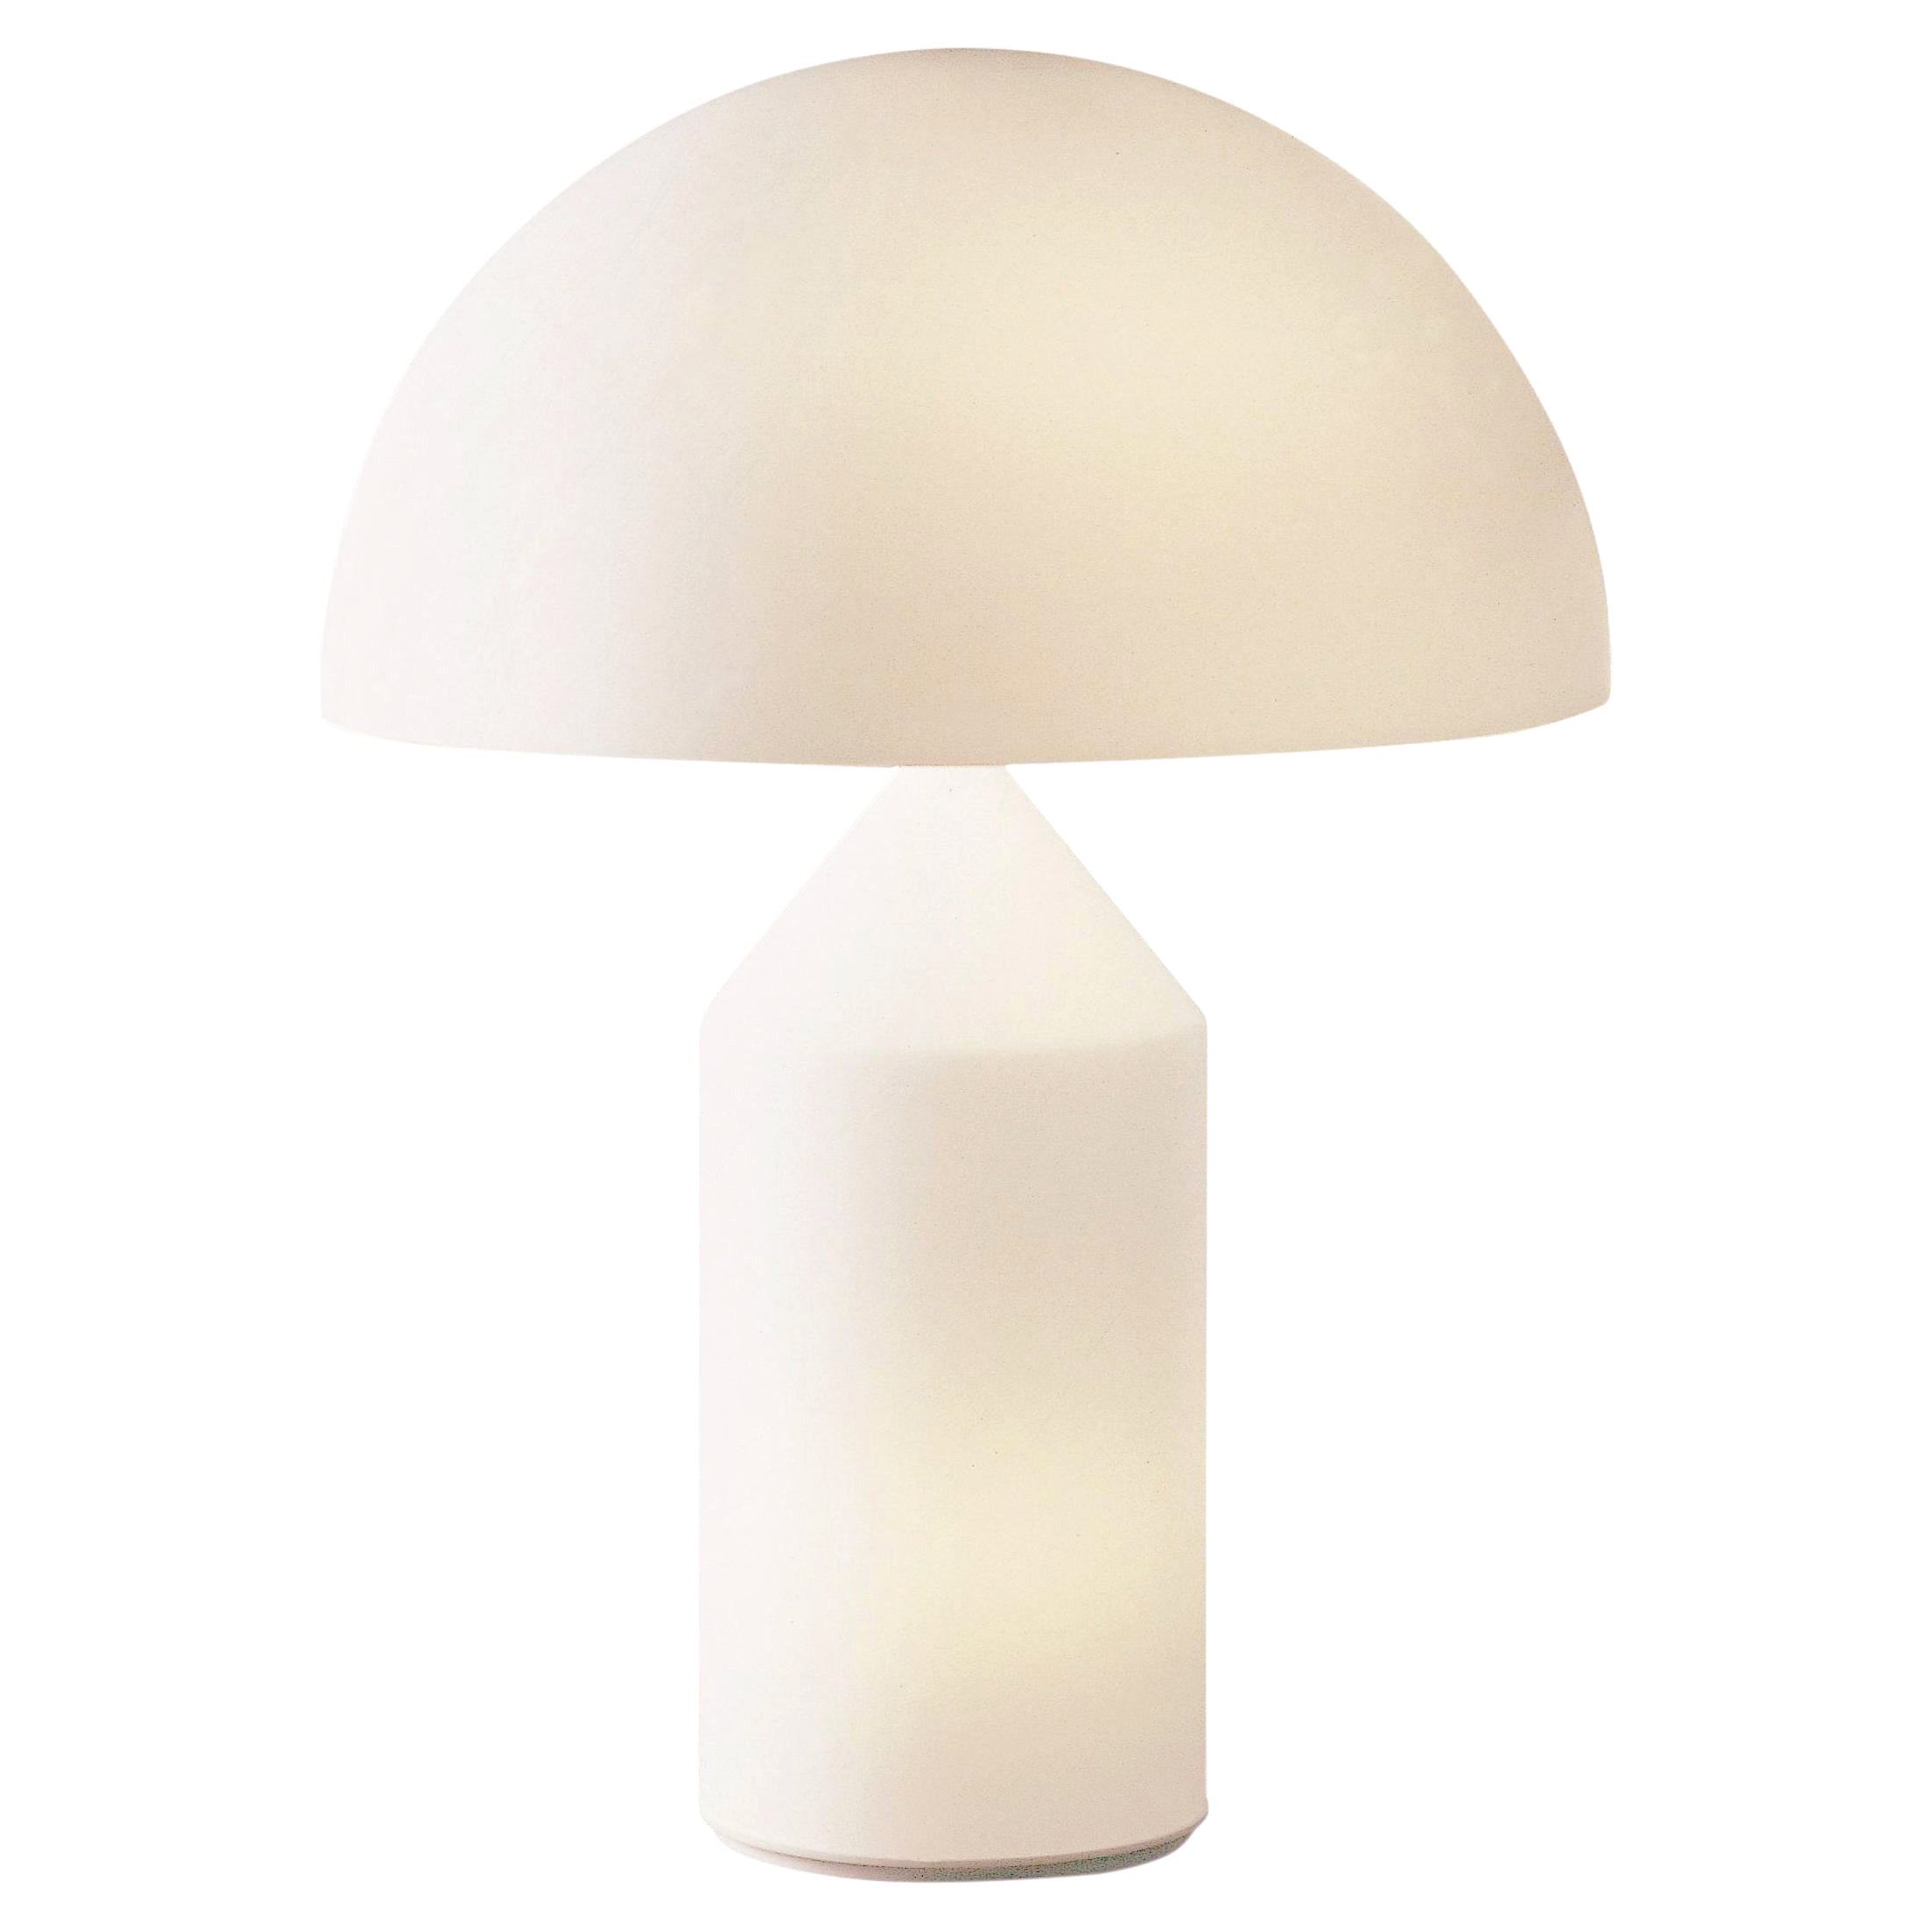 Small Vico Magistretti 'Atollo' Opaline Glass Table Lamp for Oluce